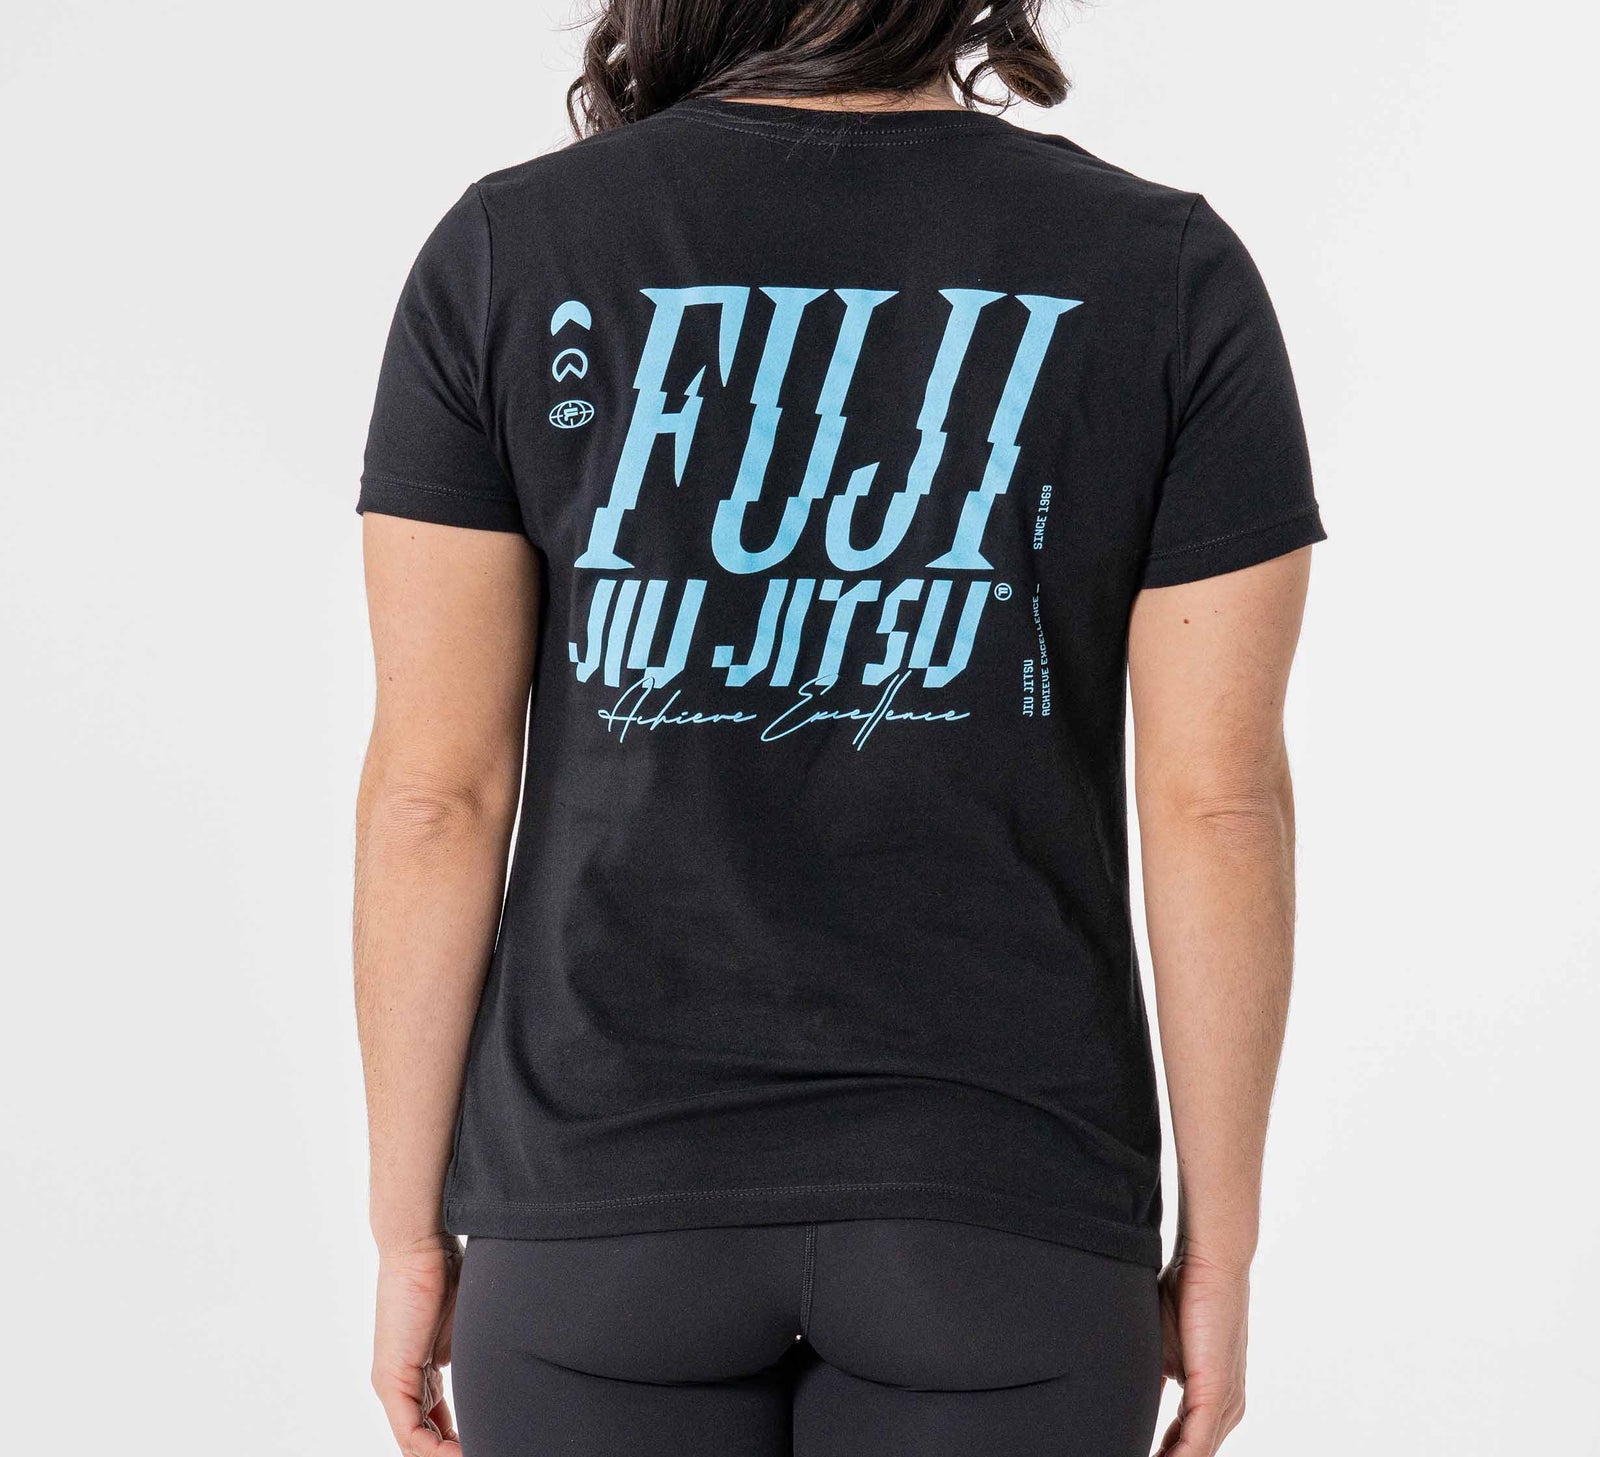 Womens Jiu Jitsu Fusion T-Shirt Black